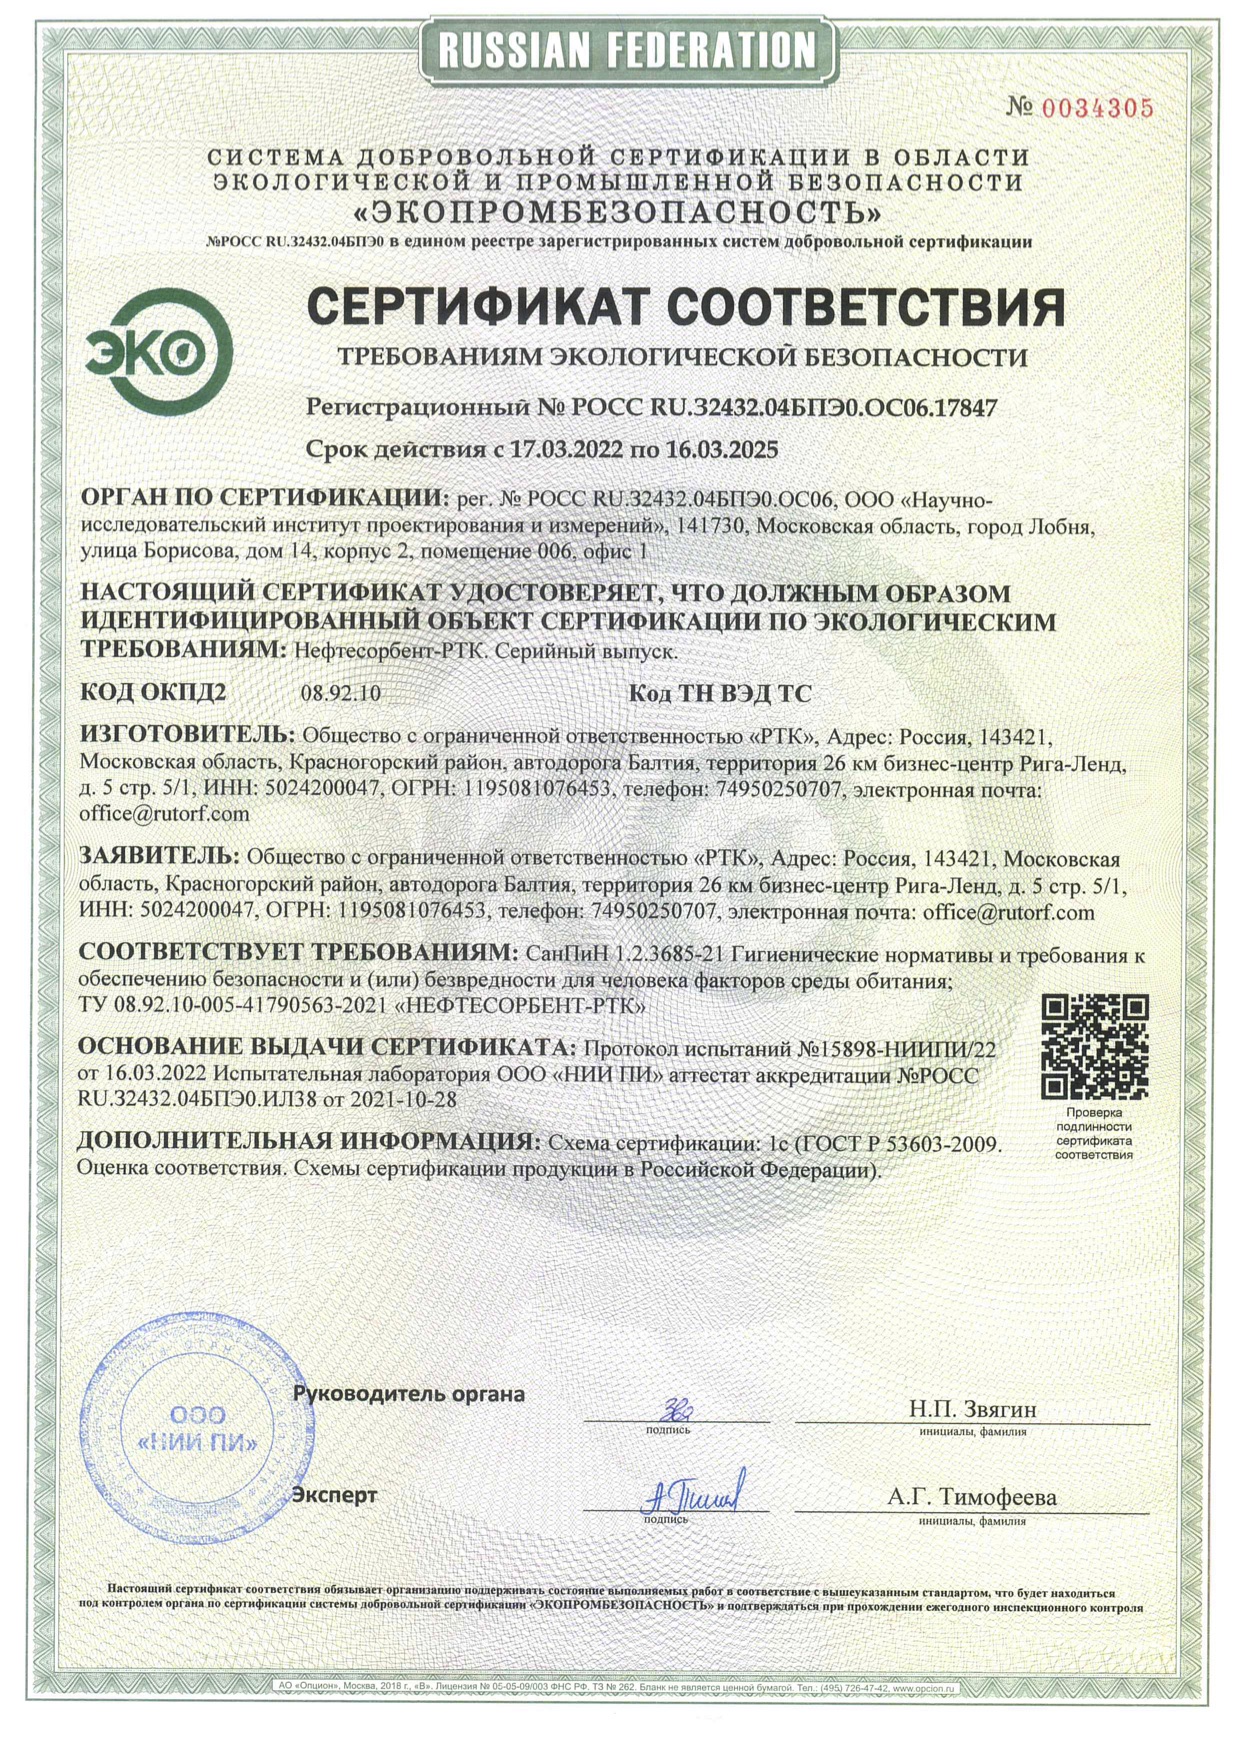 Сертификат требованиям экологической безопасности